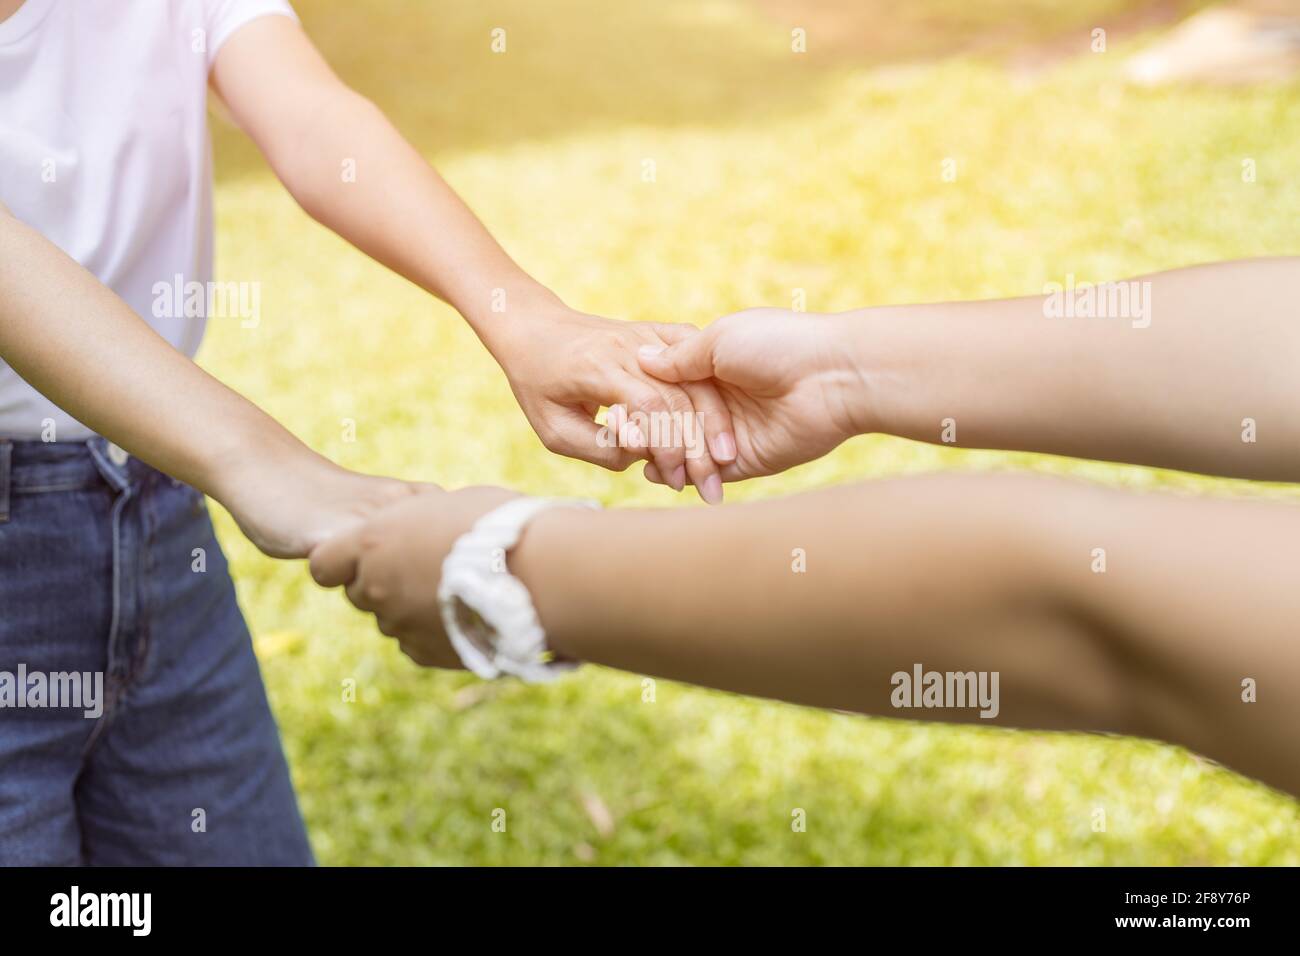 Ragazza teen raggiungere la sua mano tenendo insieme per aiutare cura e sostegno essere un buon amico con concetto di amore. Foto Stock